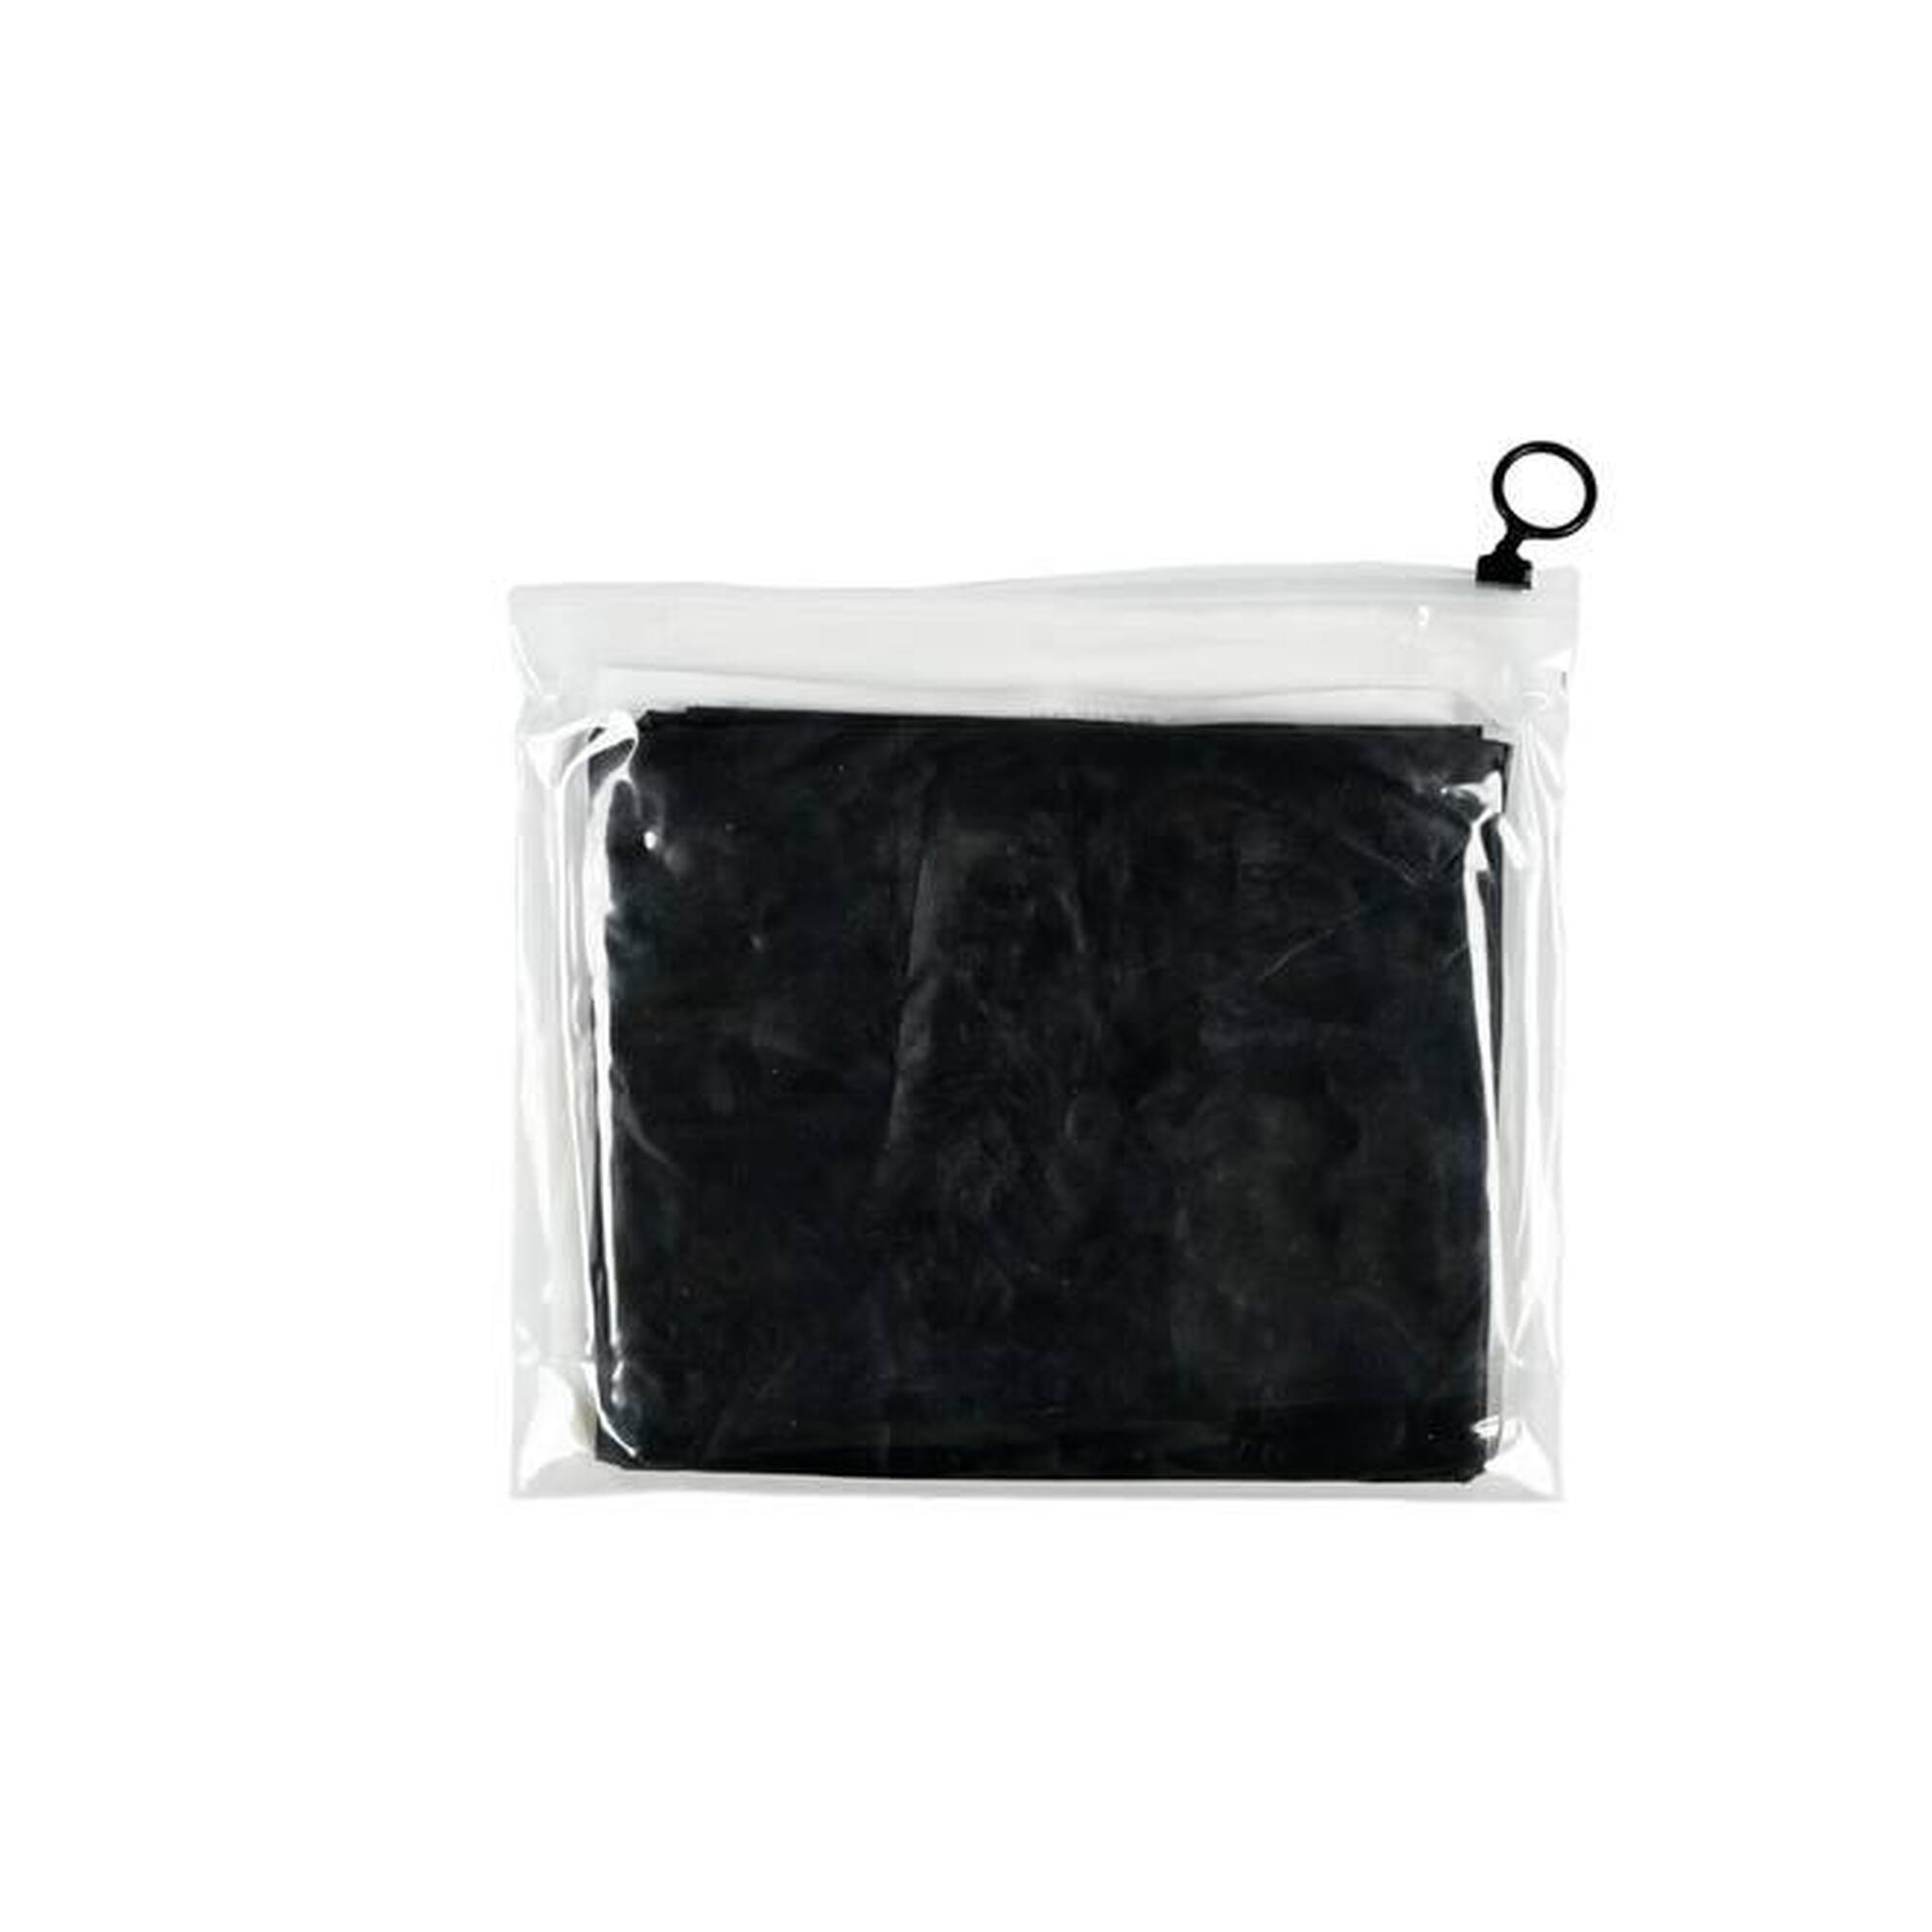 Poncho de pluie noir avec capuche - Imperméable taille universelle